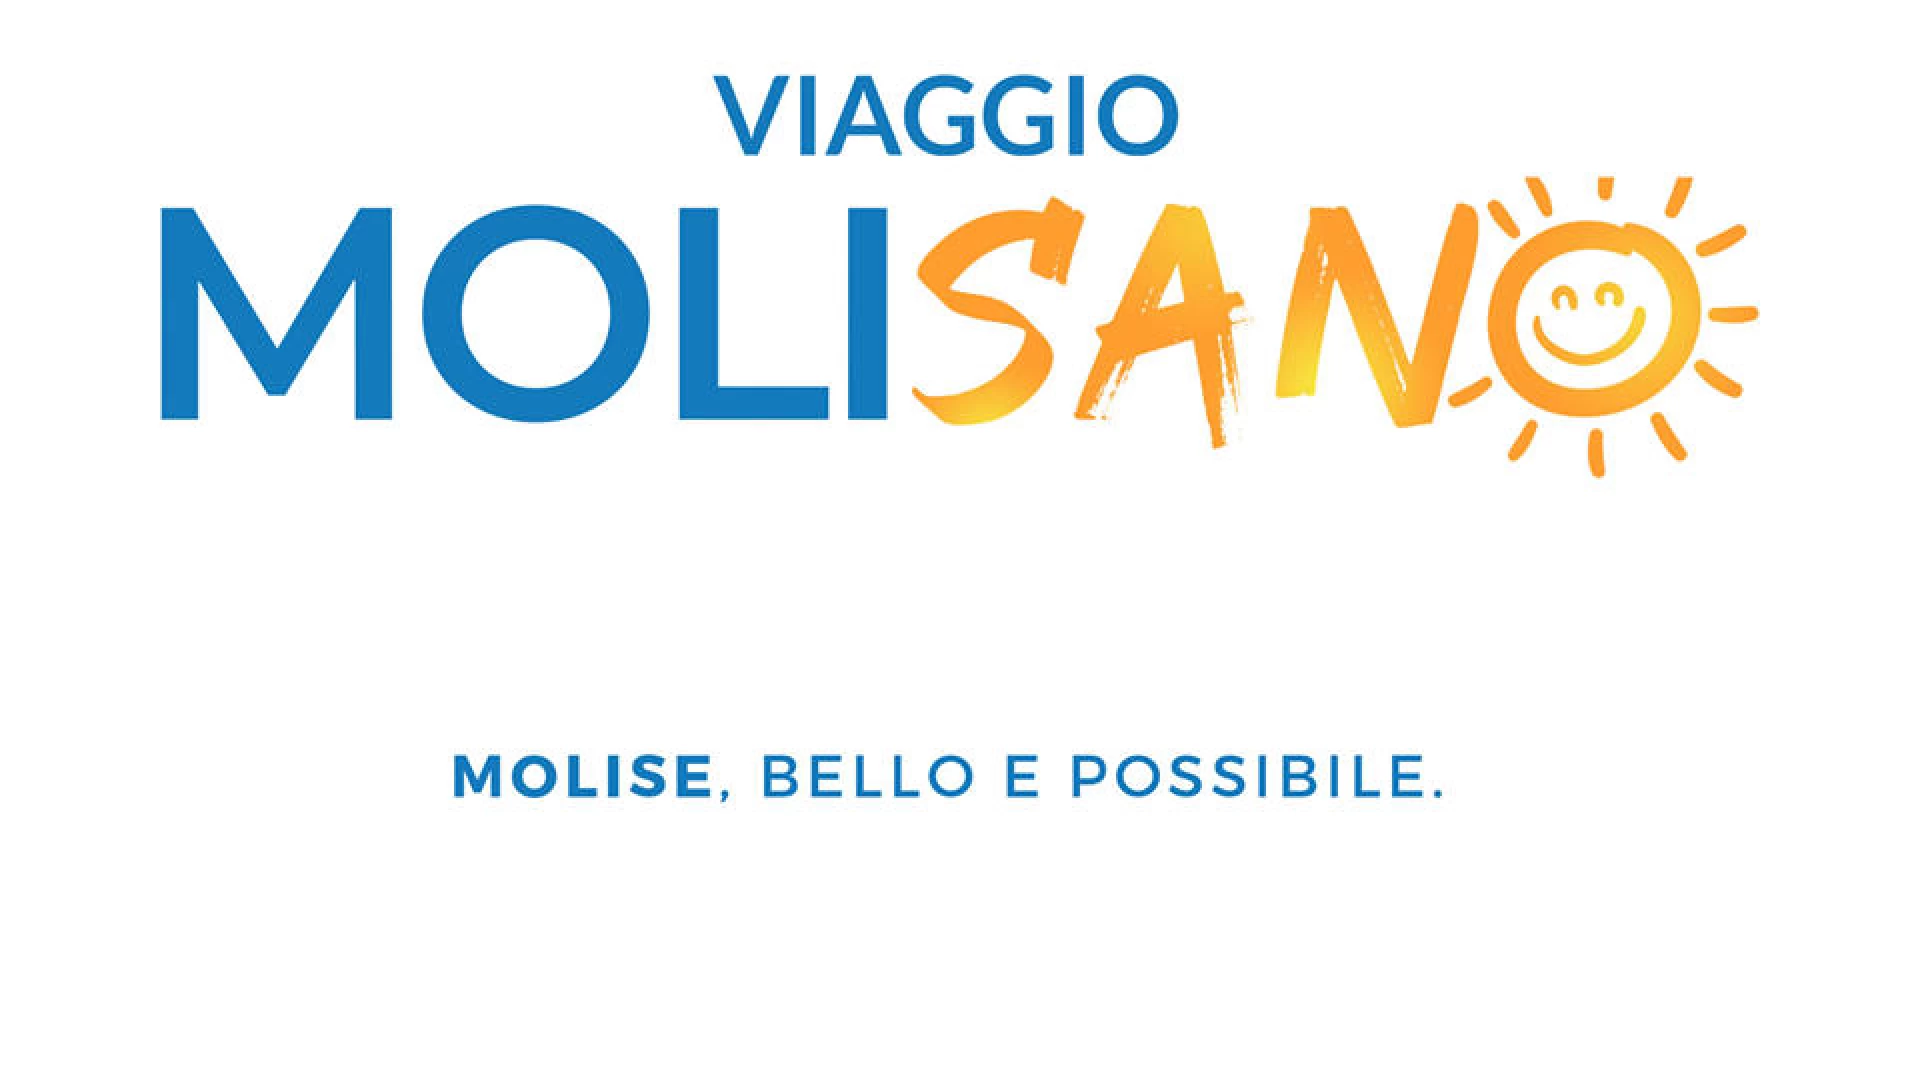 “Molisano”, la Regione Molise avvia la campagna innovativa che punta sui social per attrarre turisti italiani.